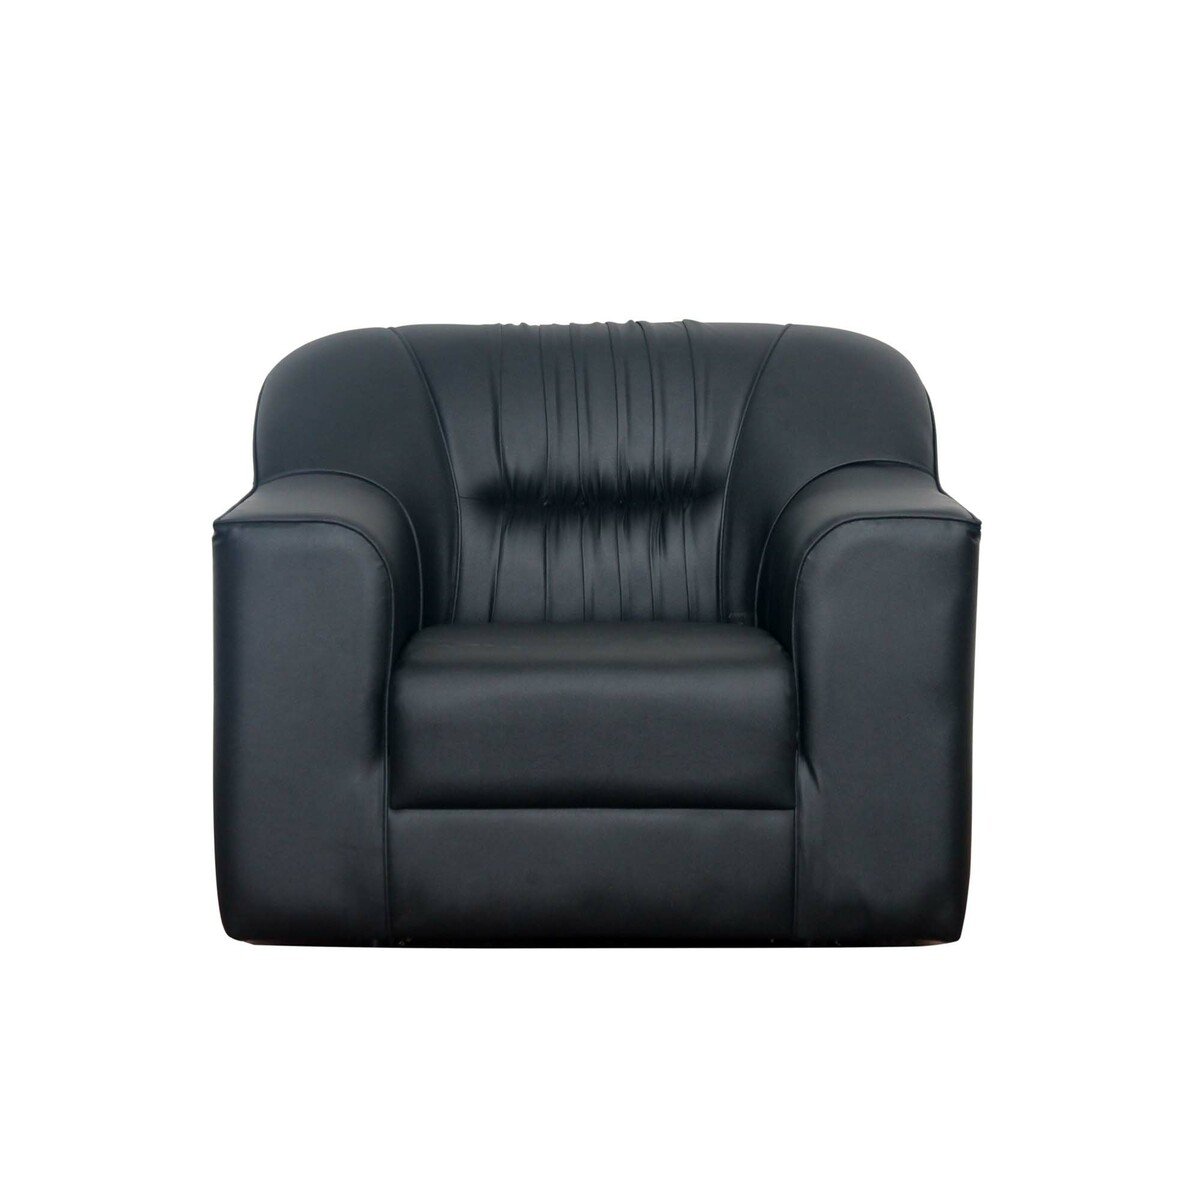 Design Plus PVC Sofa Set 5 Seater (3+1+1) SPR01 Black